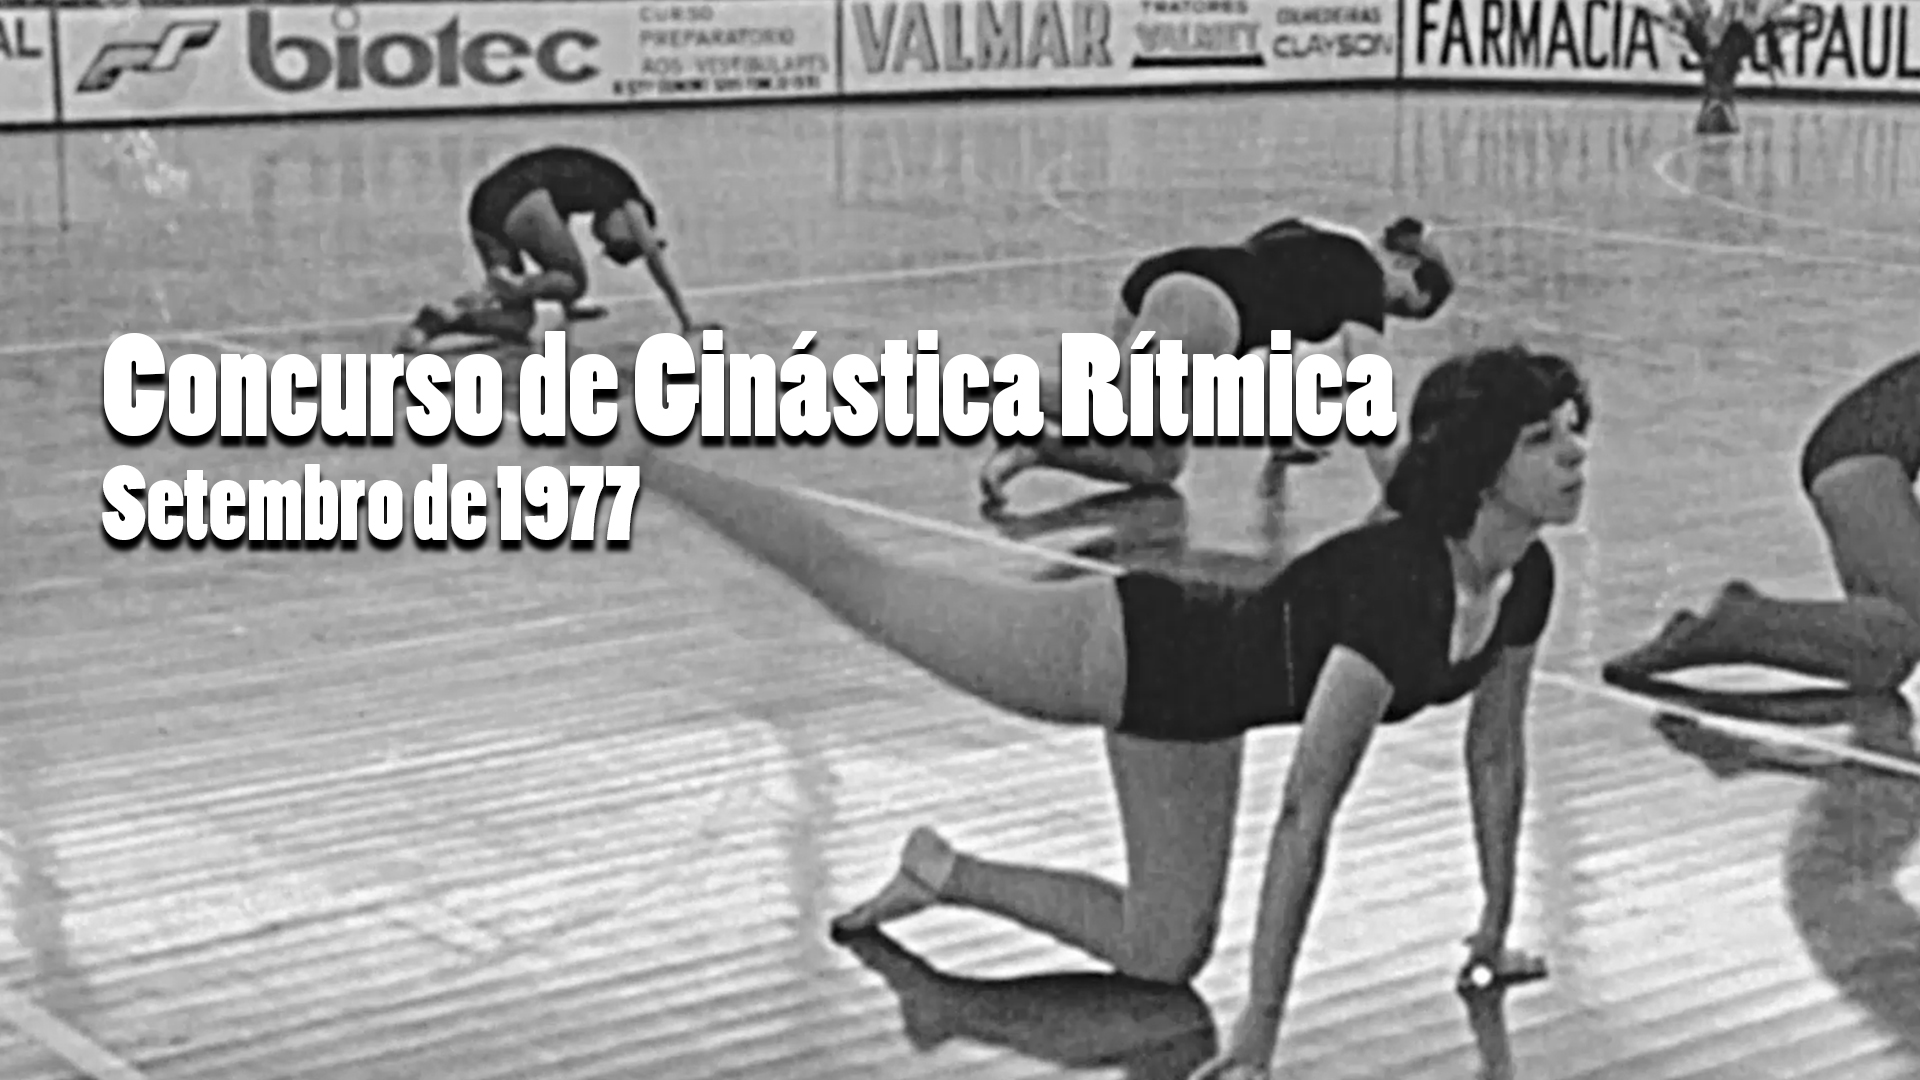 RARIDADE - Concurso de Ginástica Rítmica em 1977